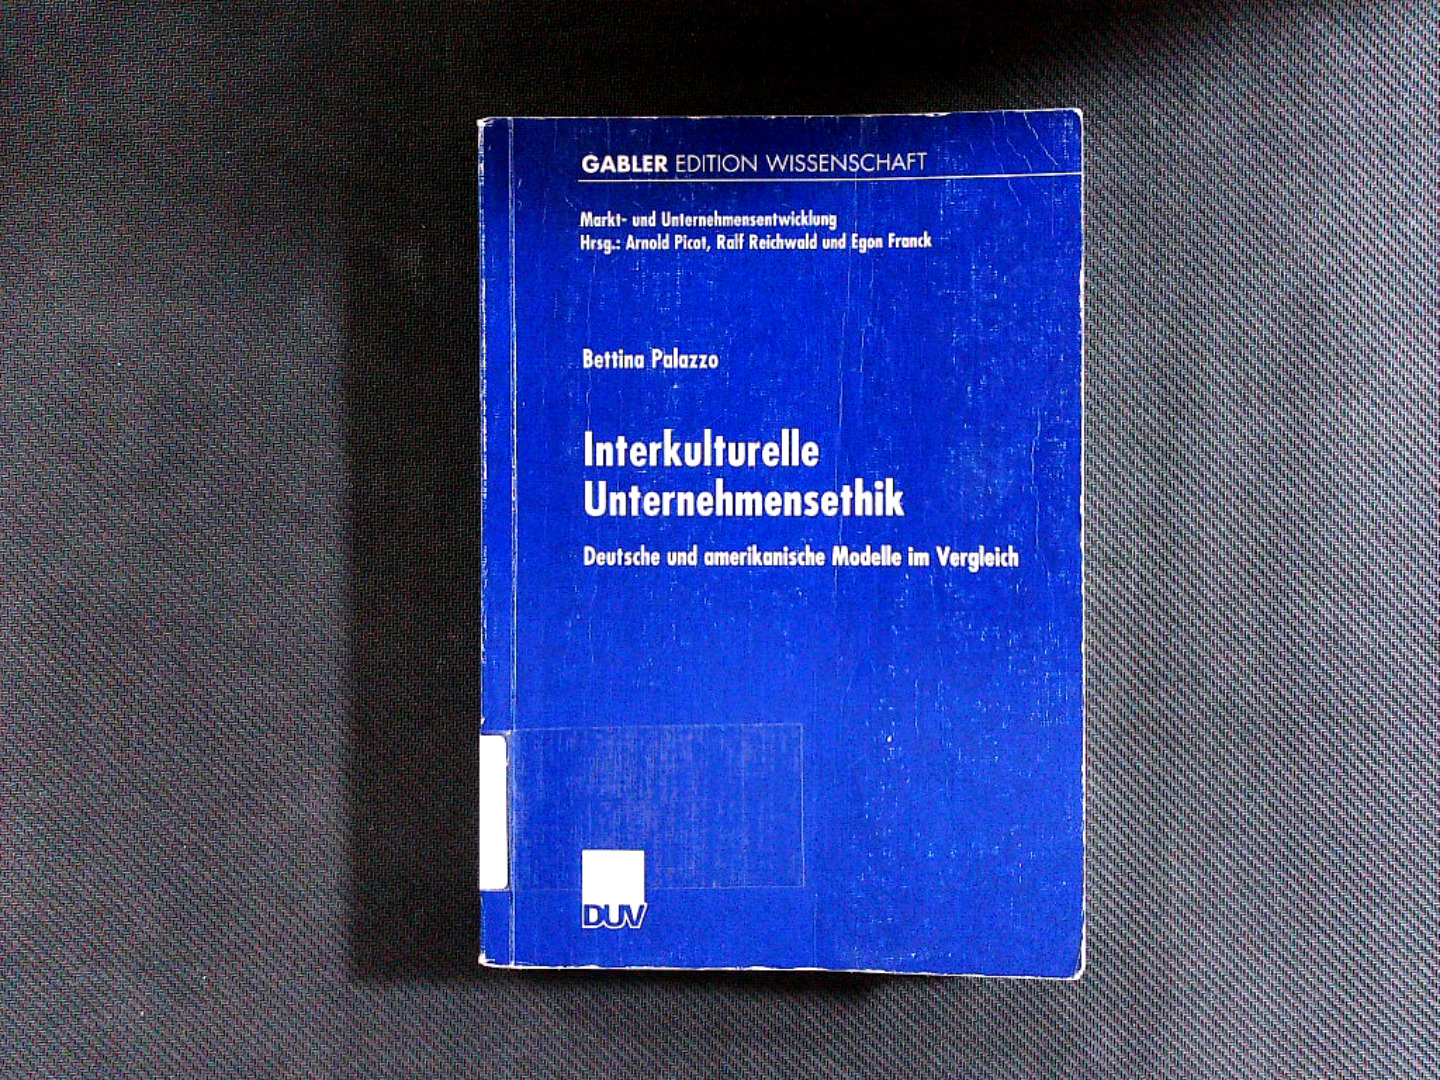 Interkulturelle Unternehmensethik: Deutsche und Amerikanische Modelle im Vergleich. (Gabler Edition Wissenschaft : Markt- und Unternehmensentwicklung). - Palazzo, Bettina